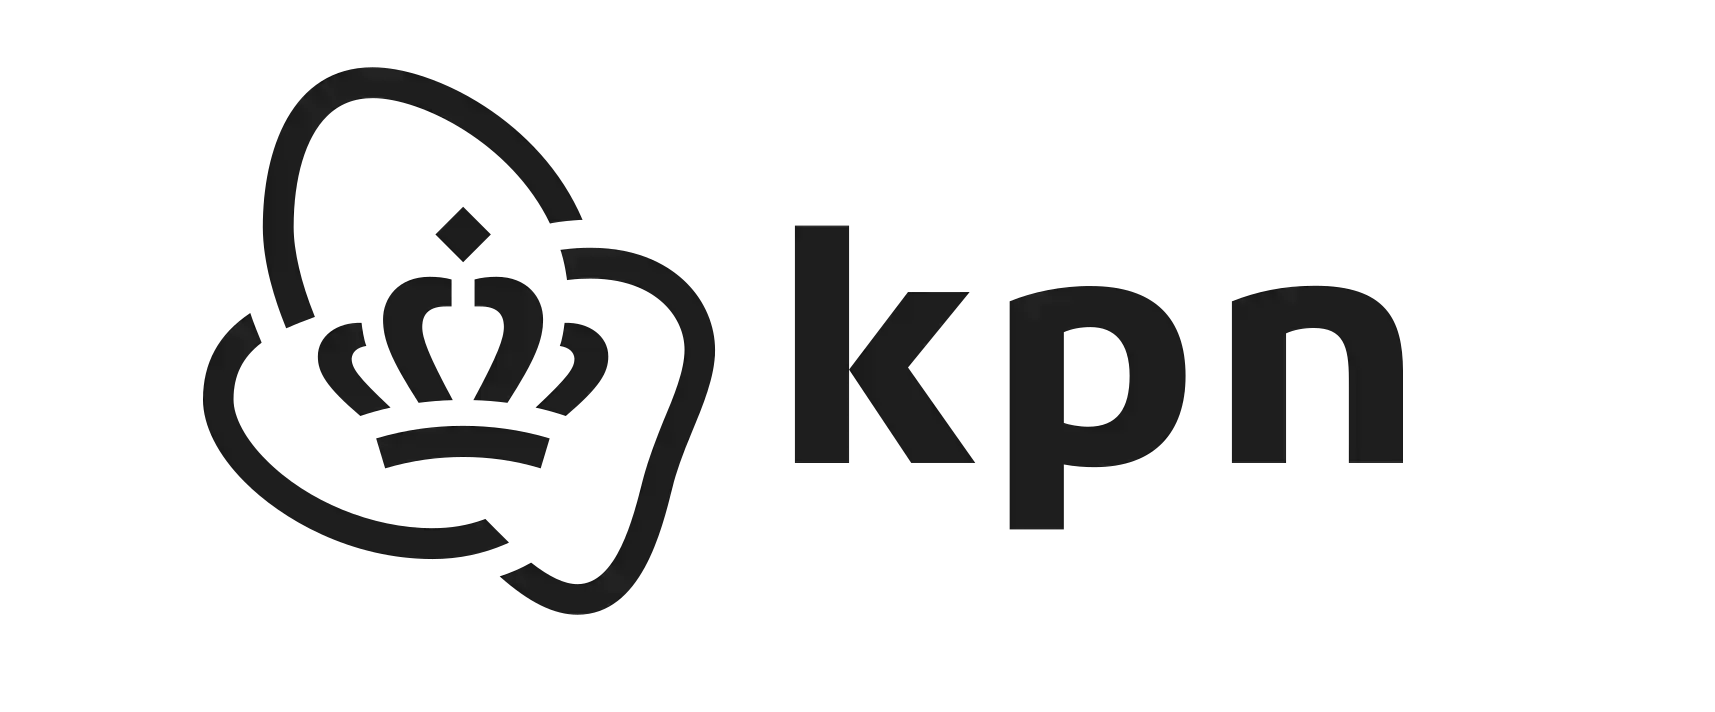 Logo Kpn